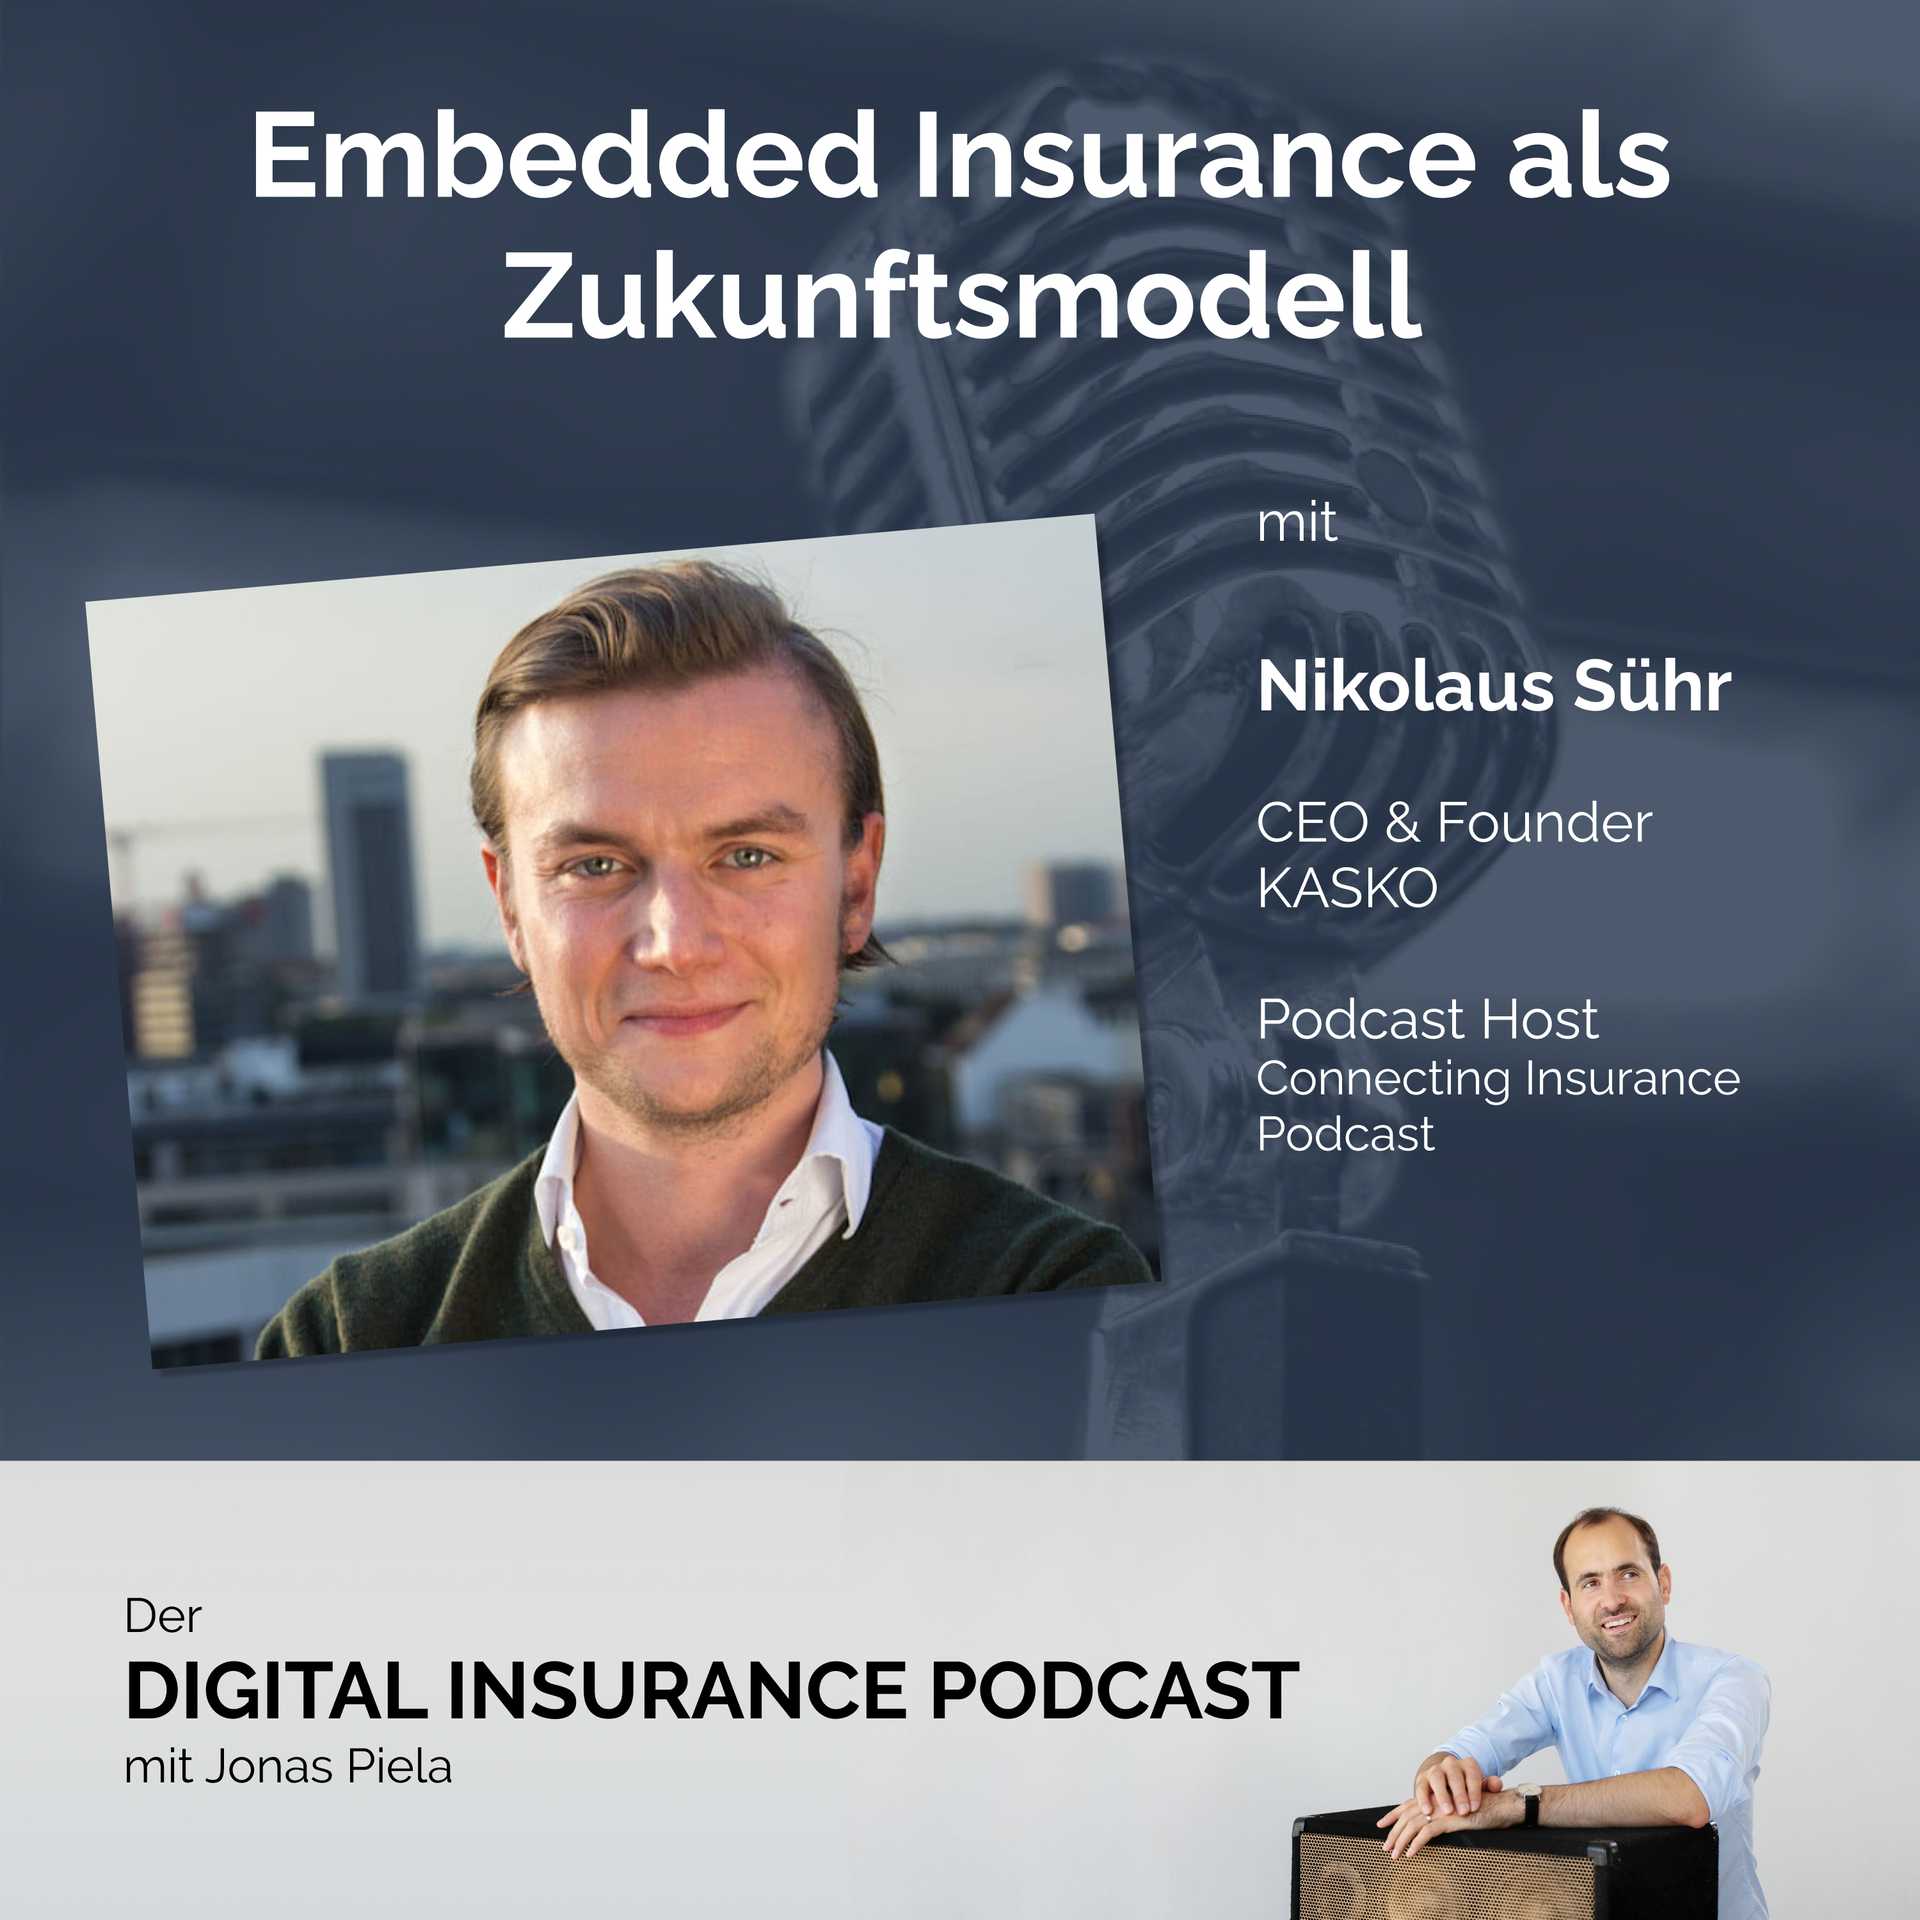 Embedded Insurance als Zukunftsmodell mit Nikolaus Sühr